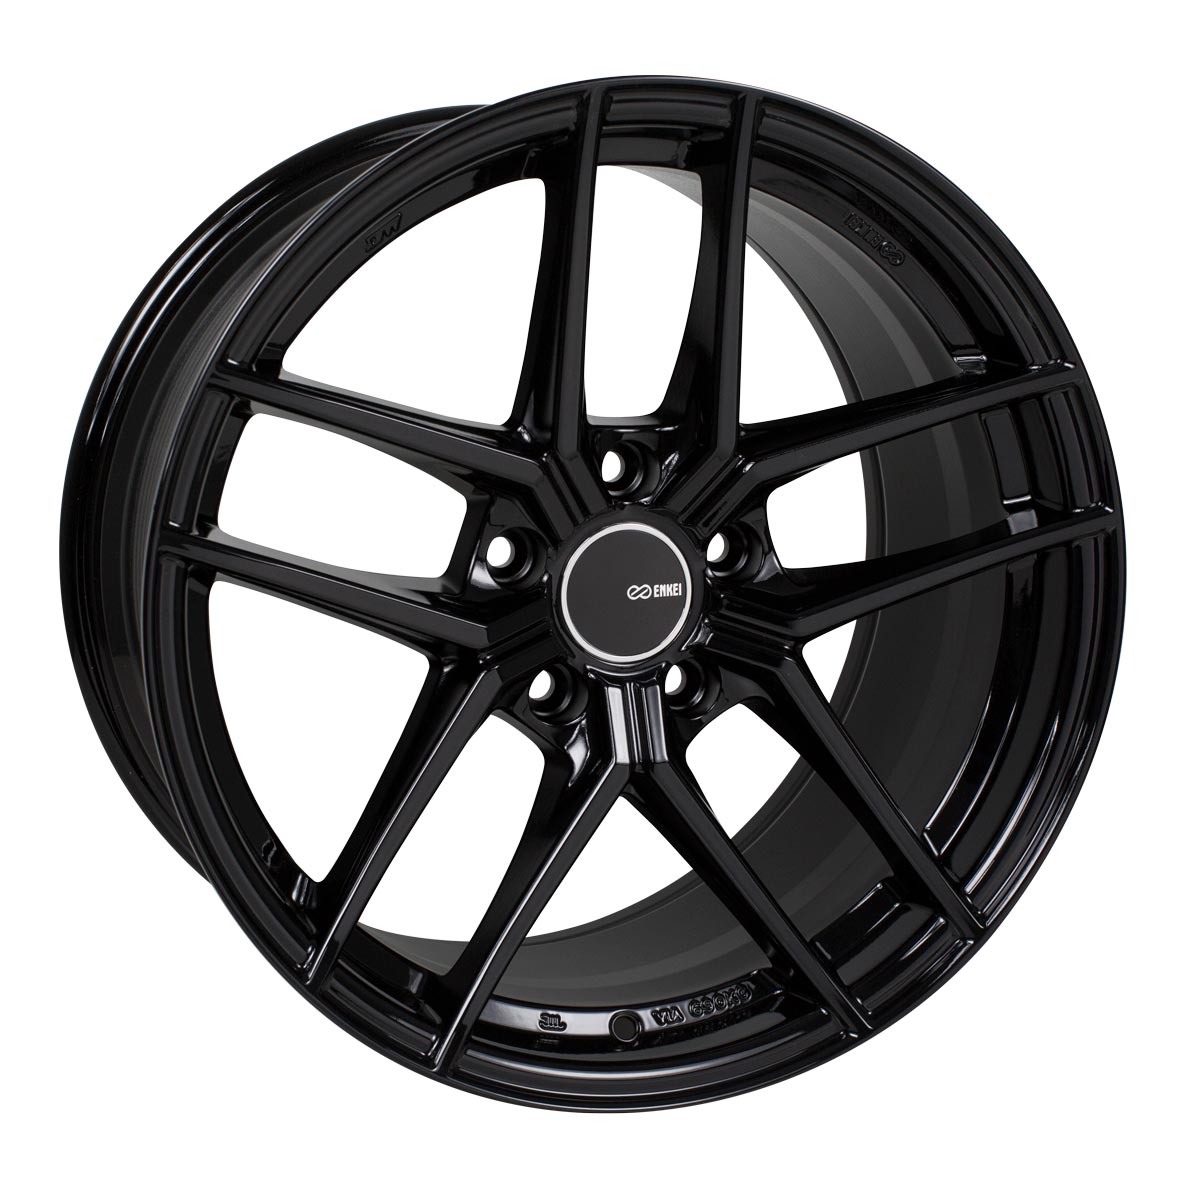 Enkei TY-5 Wheel Gloss Black 18x9.5 +15 5x114.3 498-895-6515BK